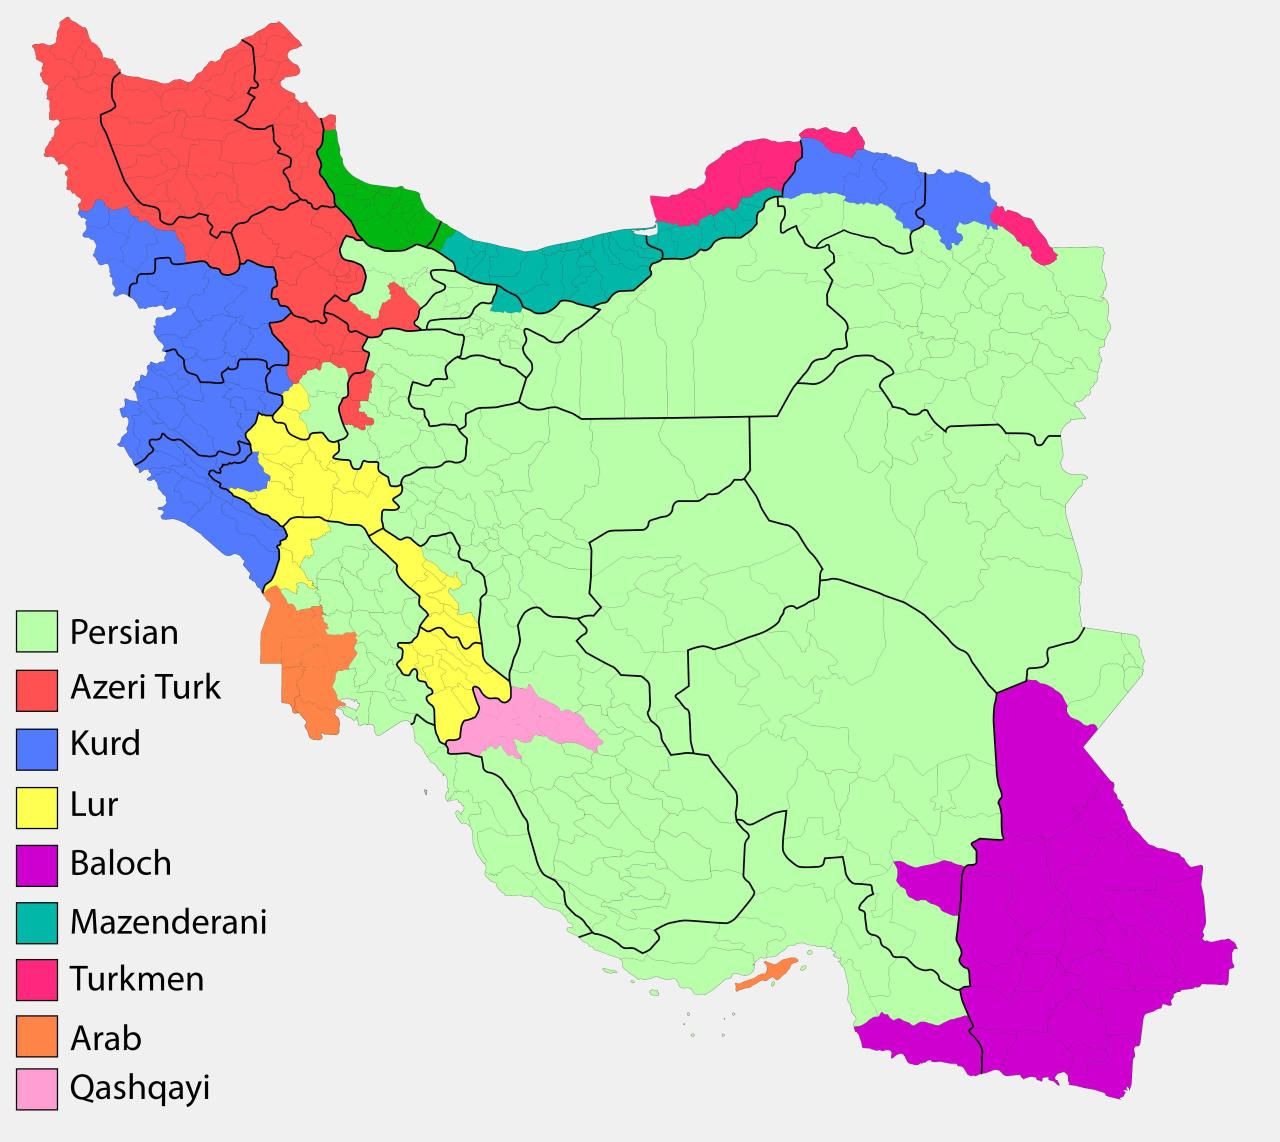 Irans Ethnic Groups